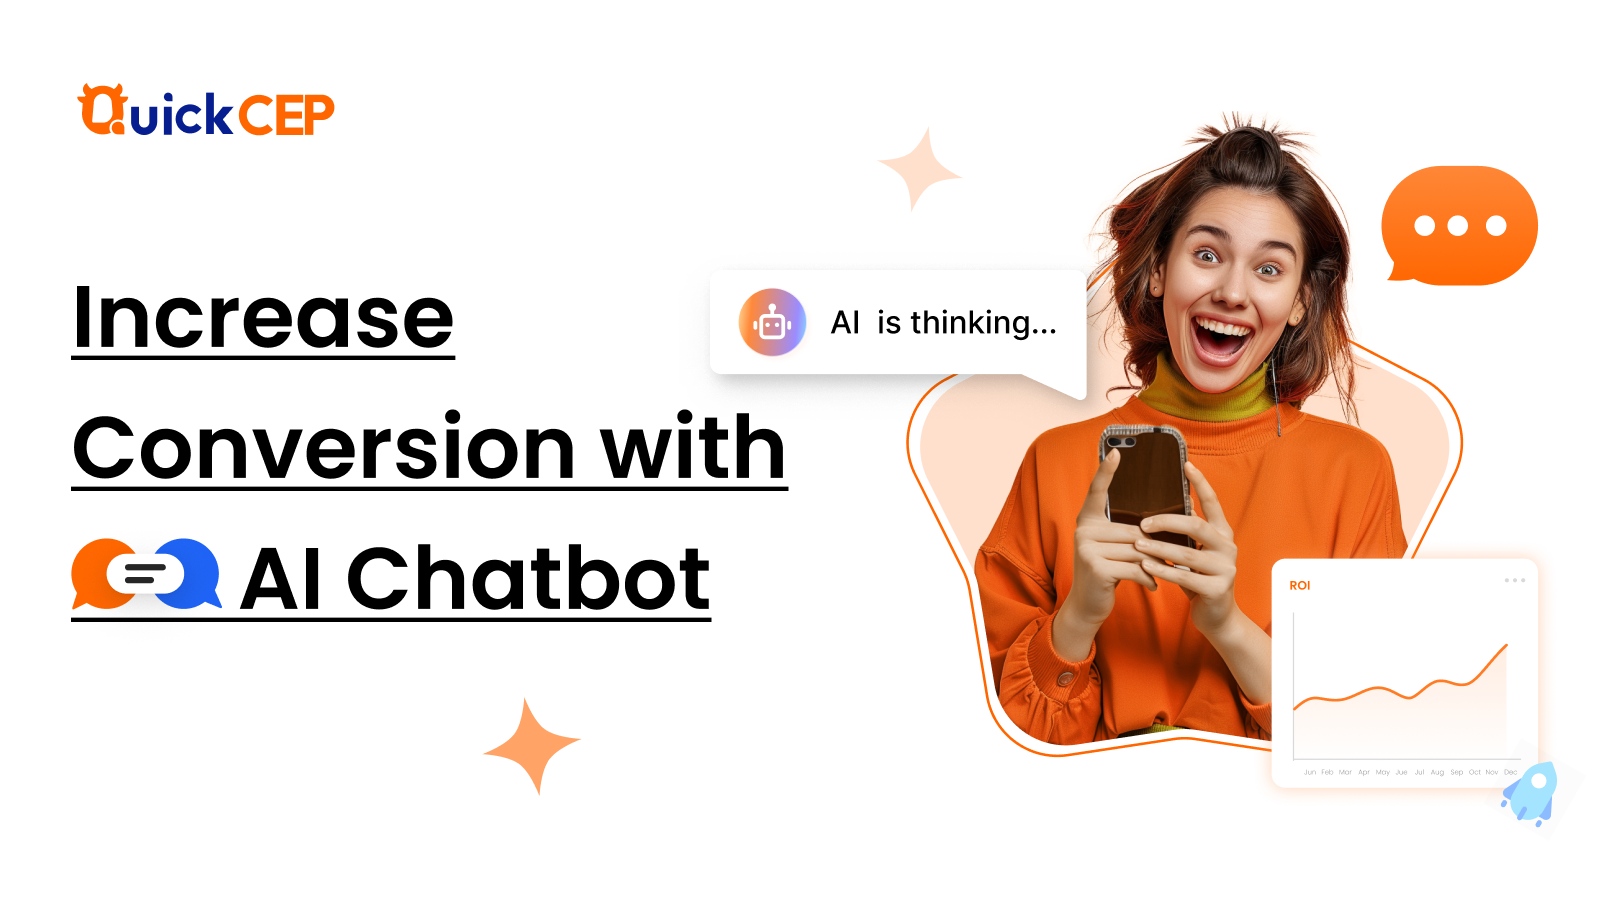 Verhoog de conversie met AI Chatbots